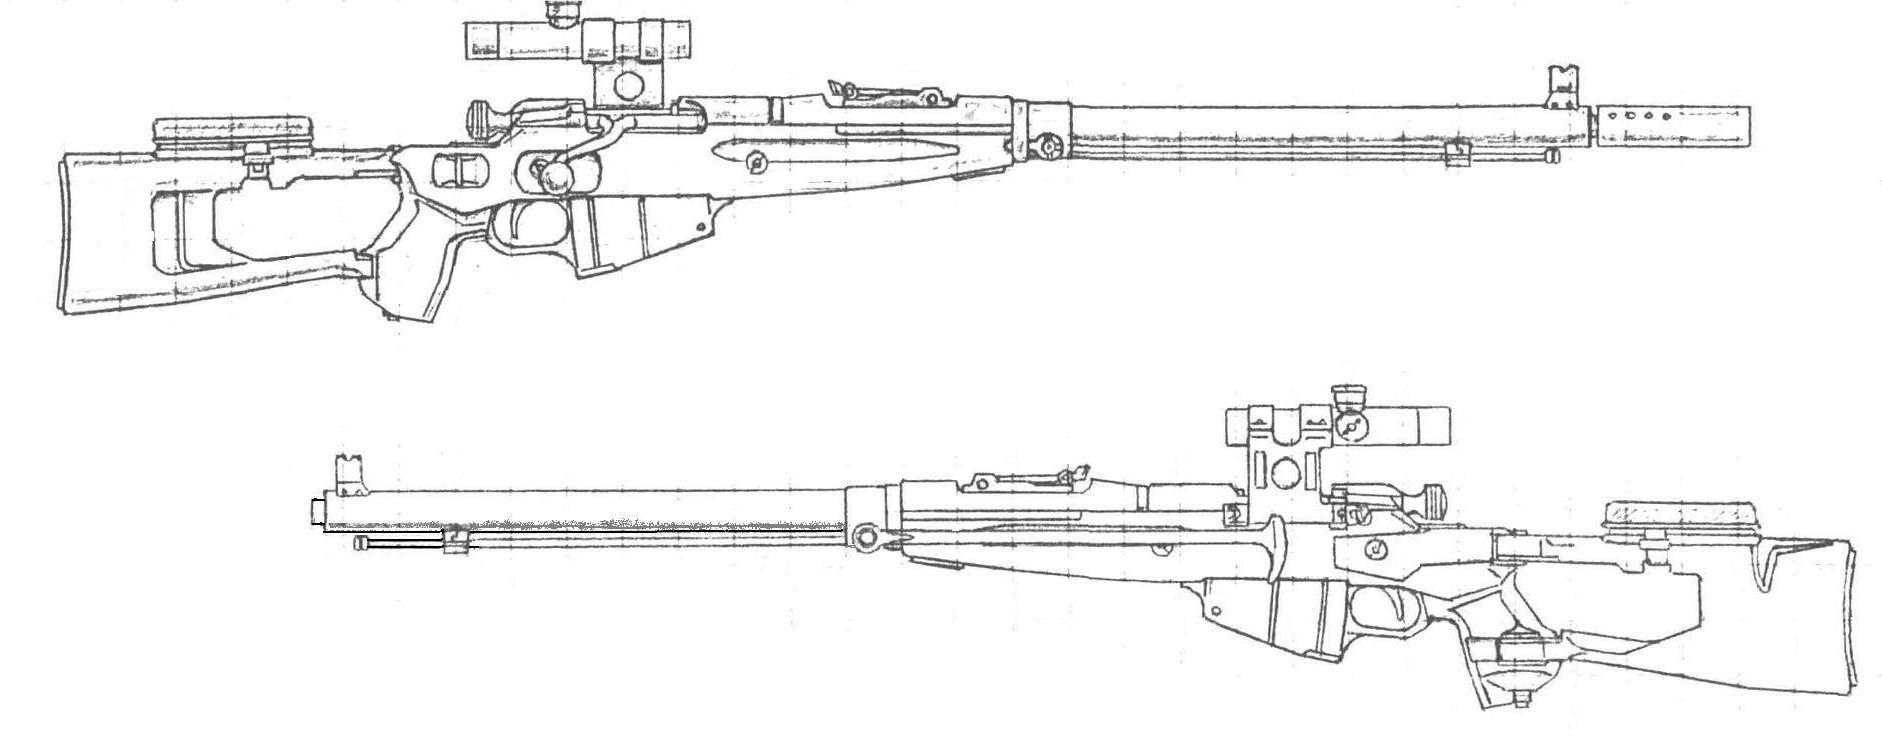 чертеж awp снайперской винтовки для дерева фото 116